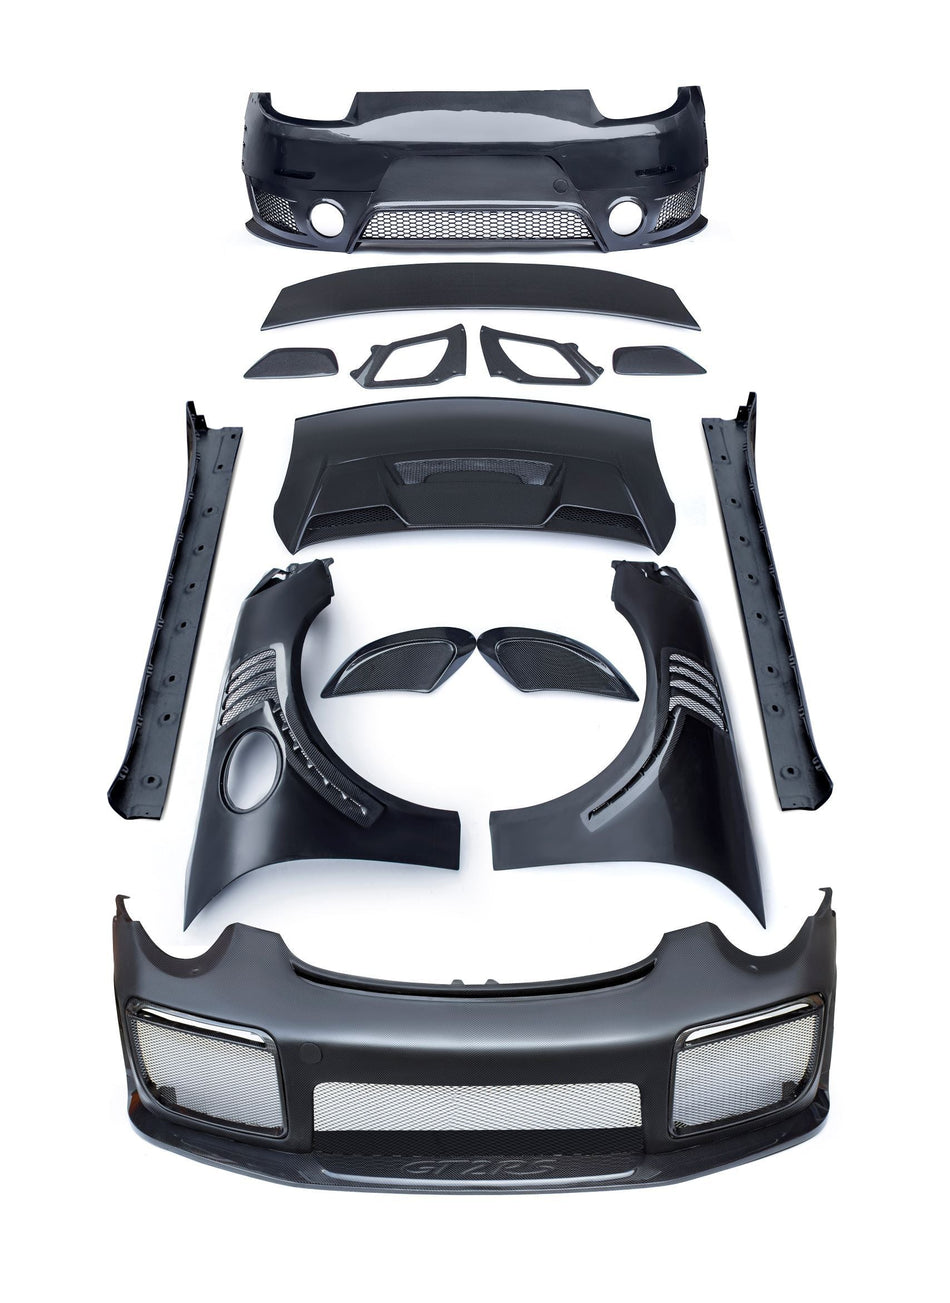 CMST GT2RS (2012-2018) Conversion Full Body Kit for Porsche 911 991.1 991.2